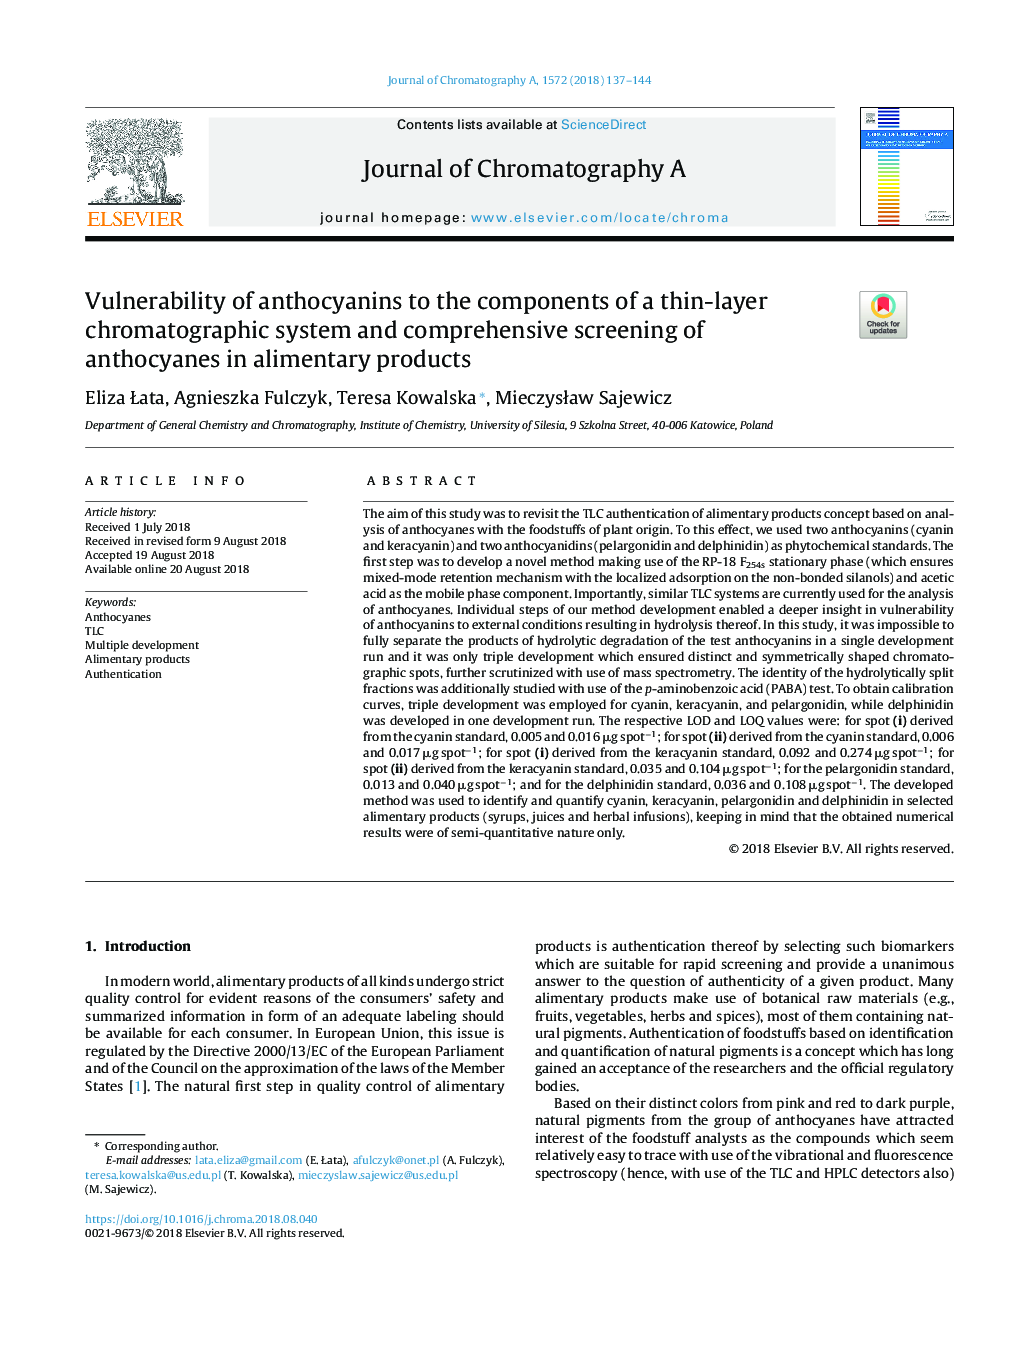 آسیب پذیری آنتوسیانین ها به اجزای یک سیستم کروماتوگرافی نازک و بررسی جامع آنتوسیان ها در محصولات گوشتی